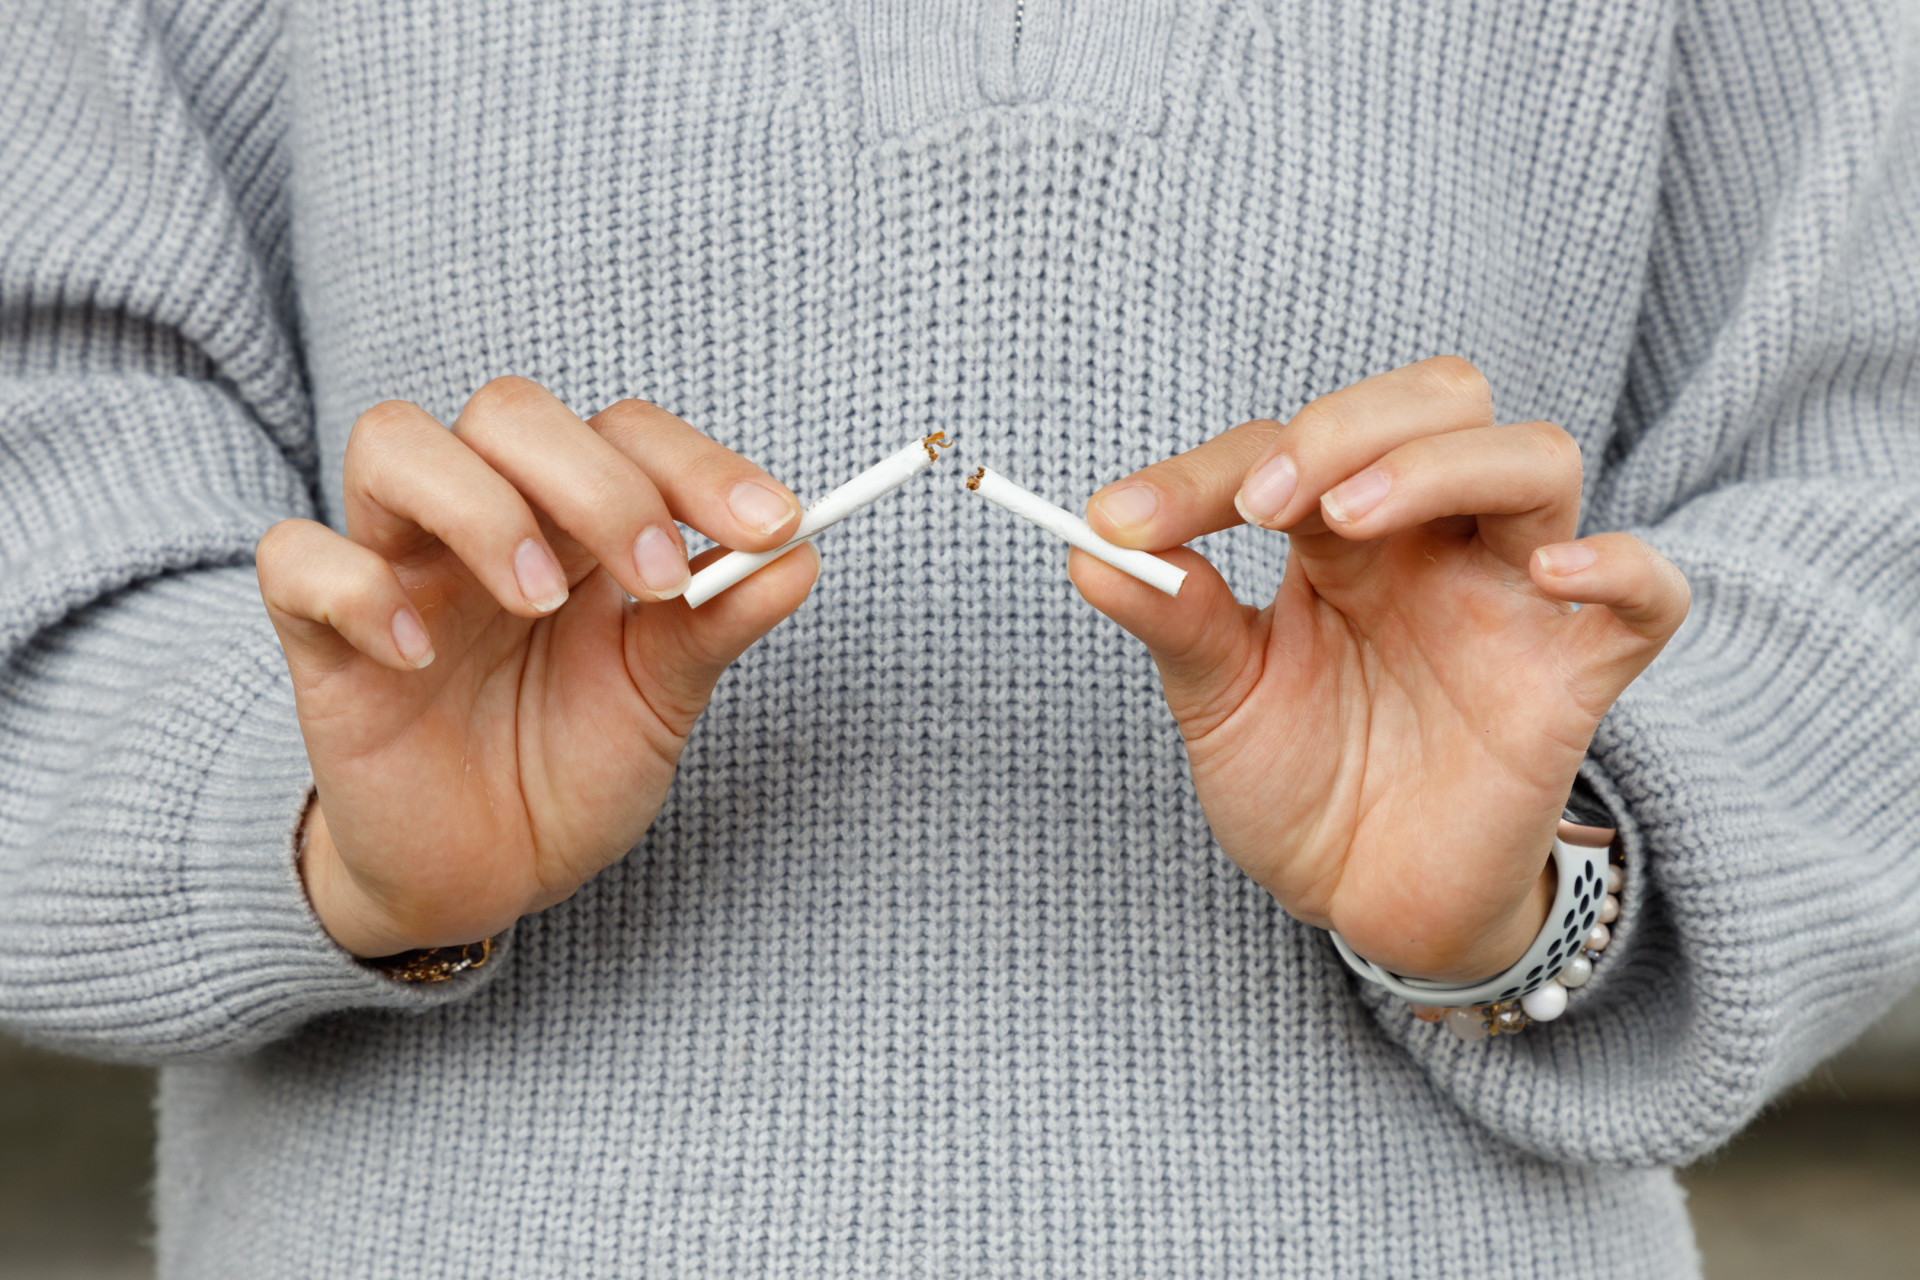 Эндокринолог Калошина: Курение натощак может привести к гастриту и язвам